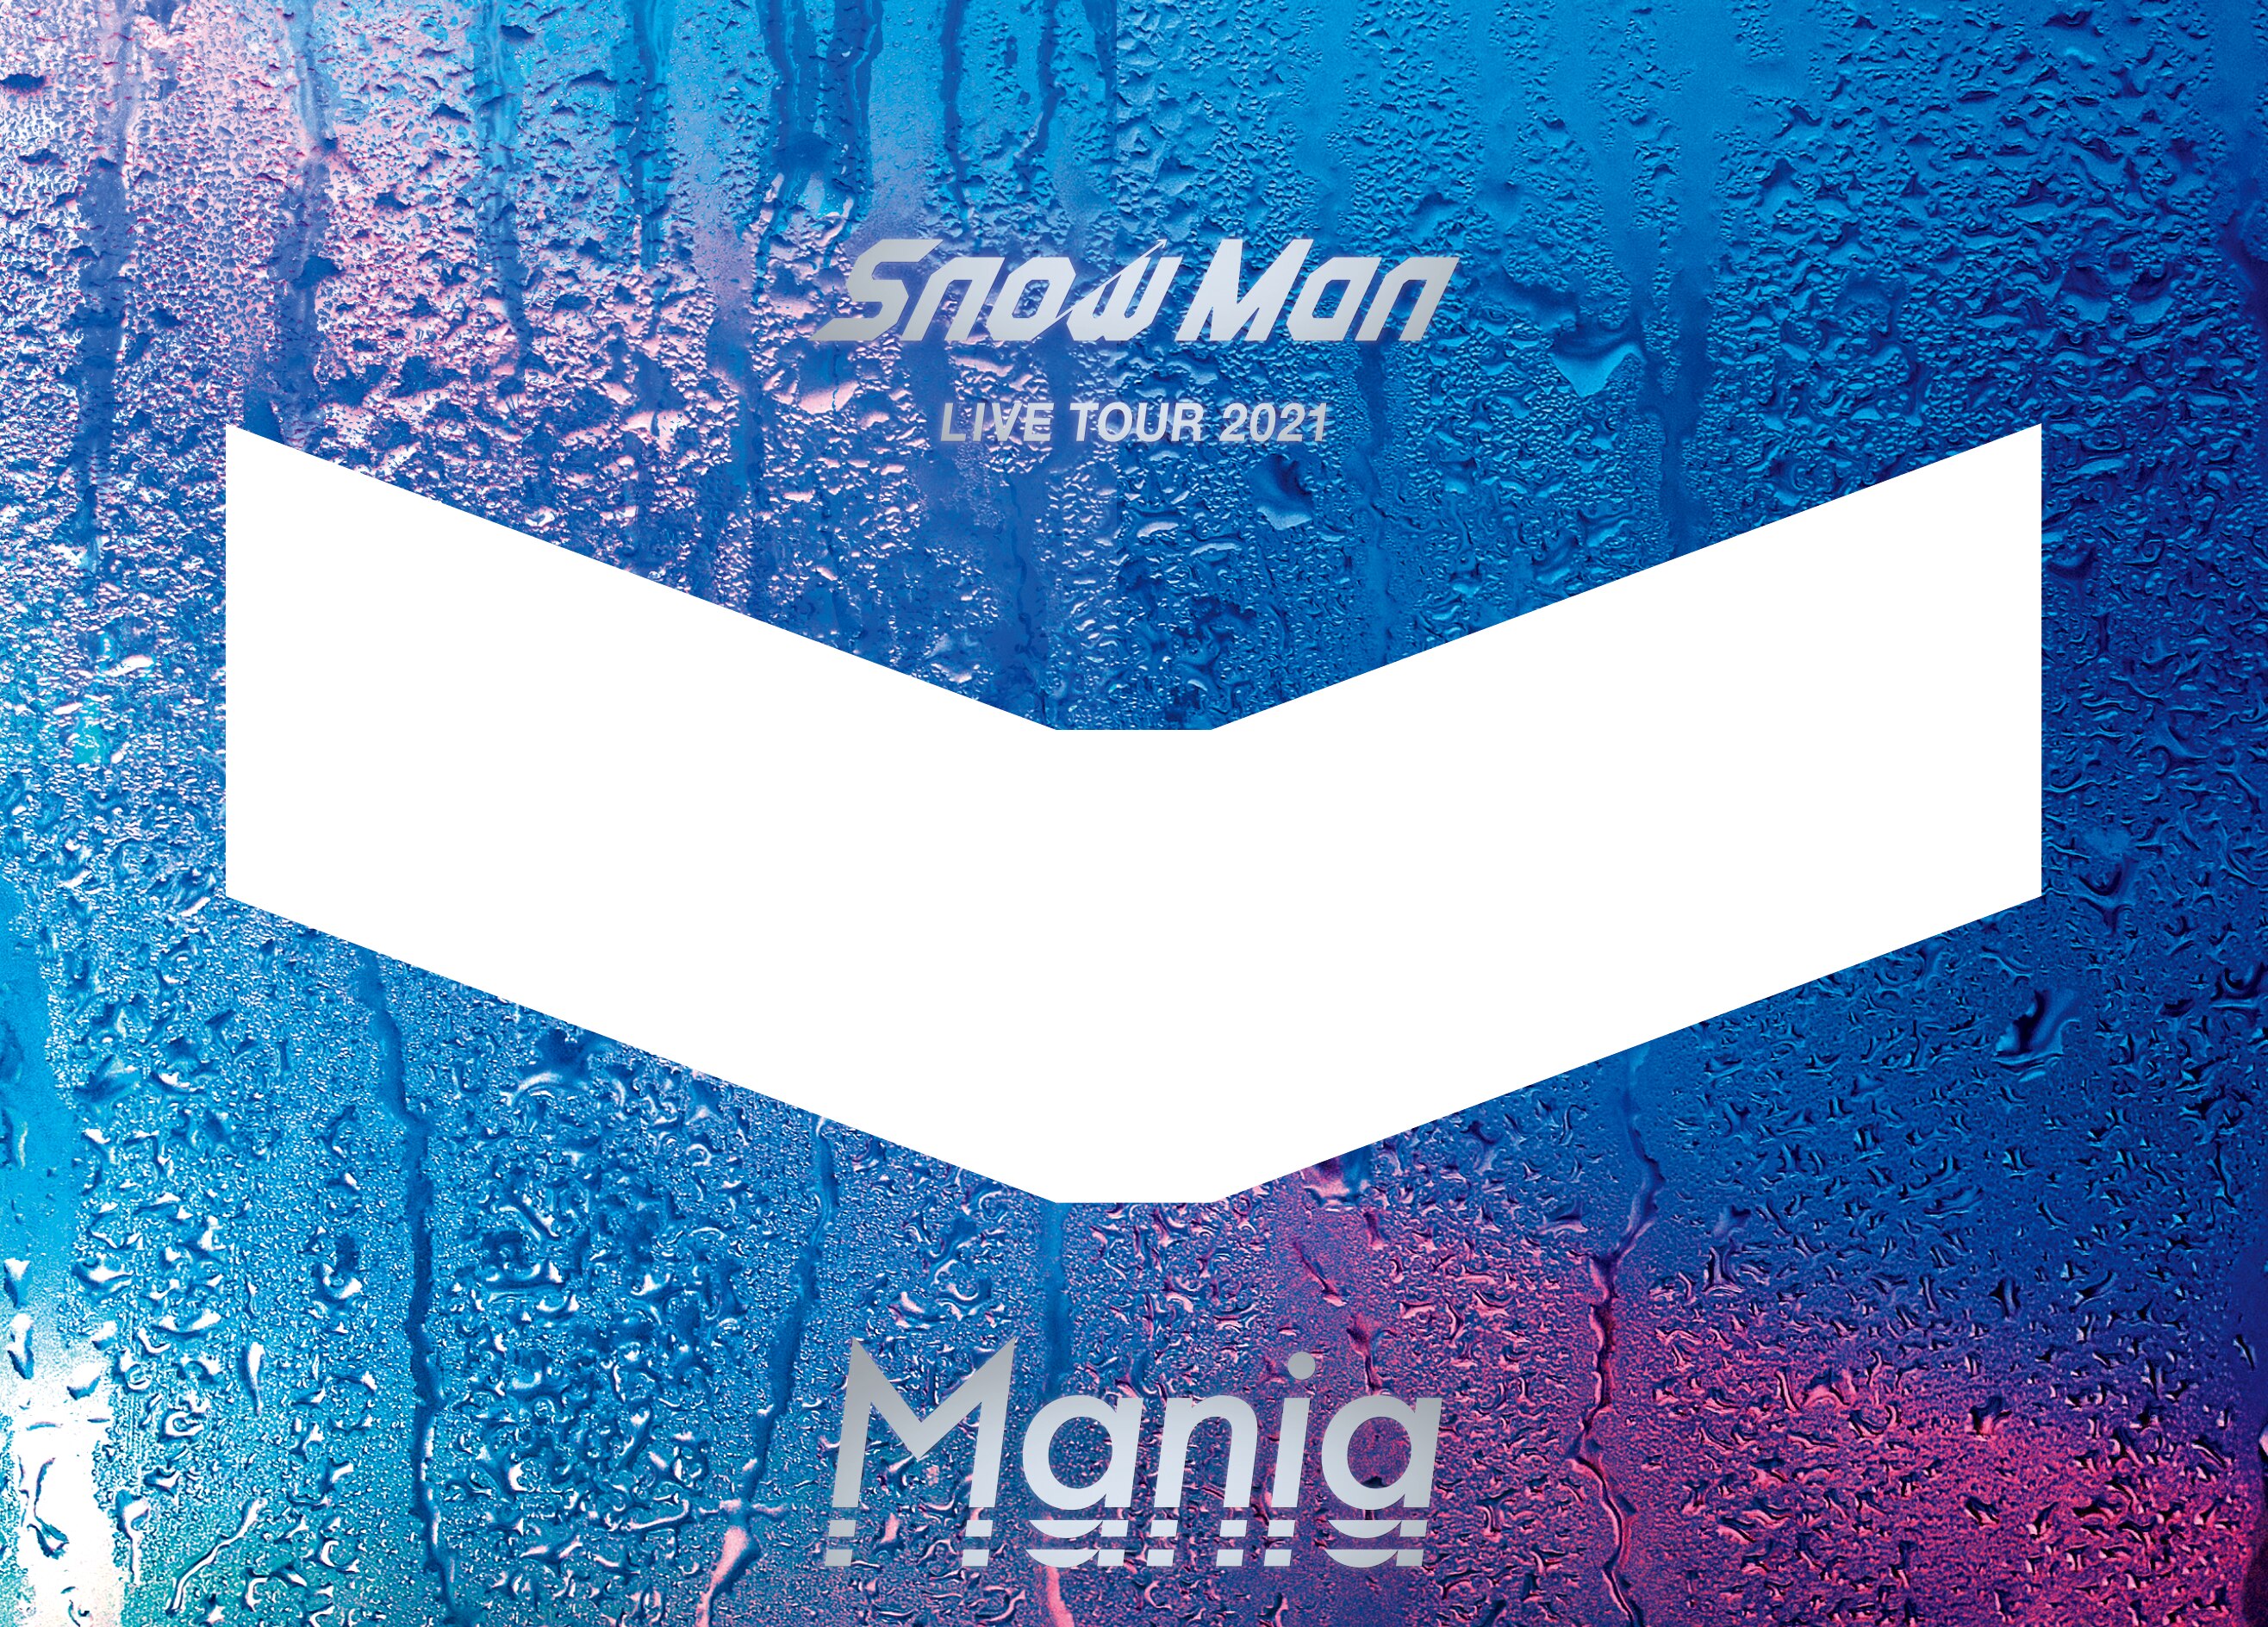 Snow Man LIVE TOUR 2021 Mania | www.vp-concrete.com